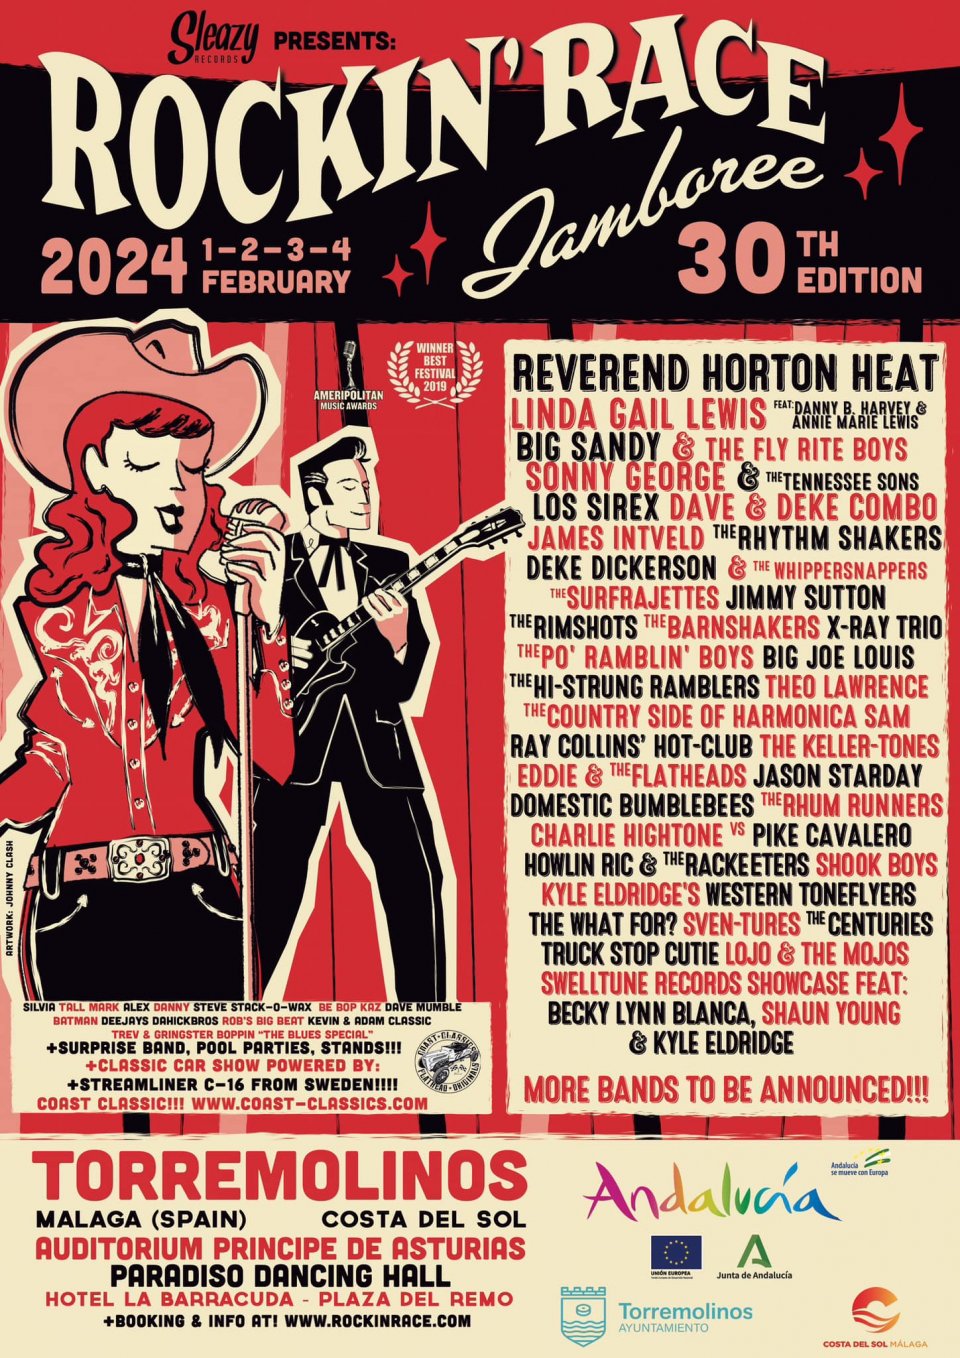 Conciertos del Festival Rockin' Race Jamboree 2024